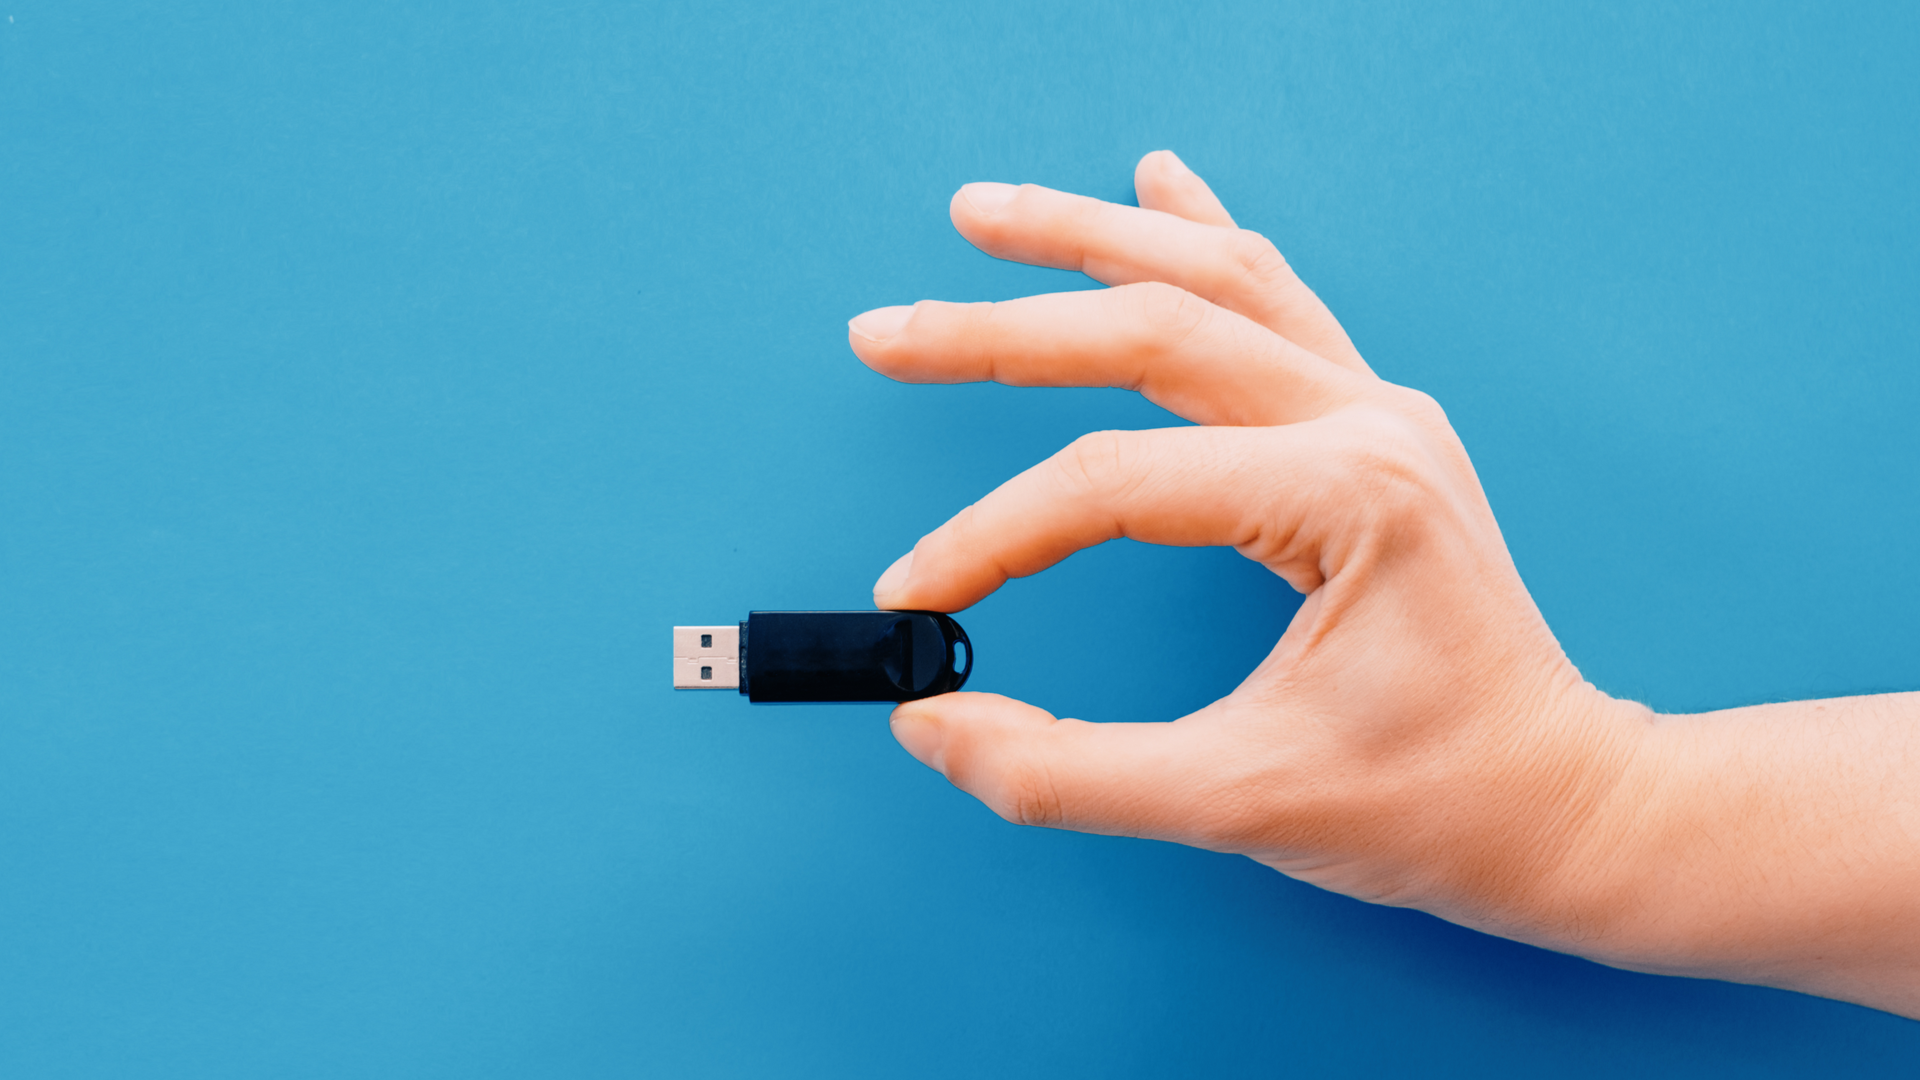 Concept de mémoire de données numériques. Main tenant une clé USB sur fond bleu.